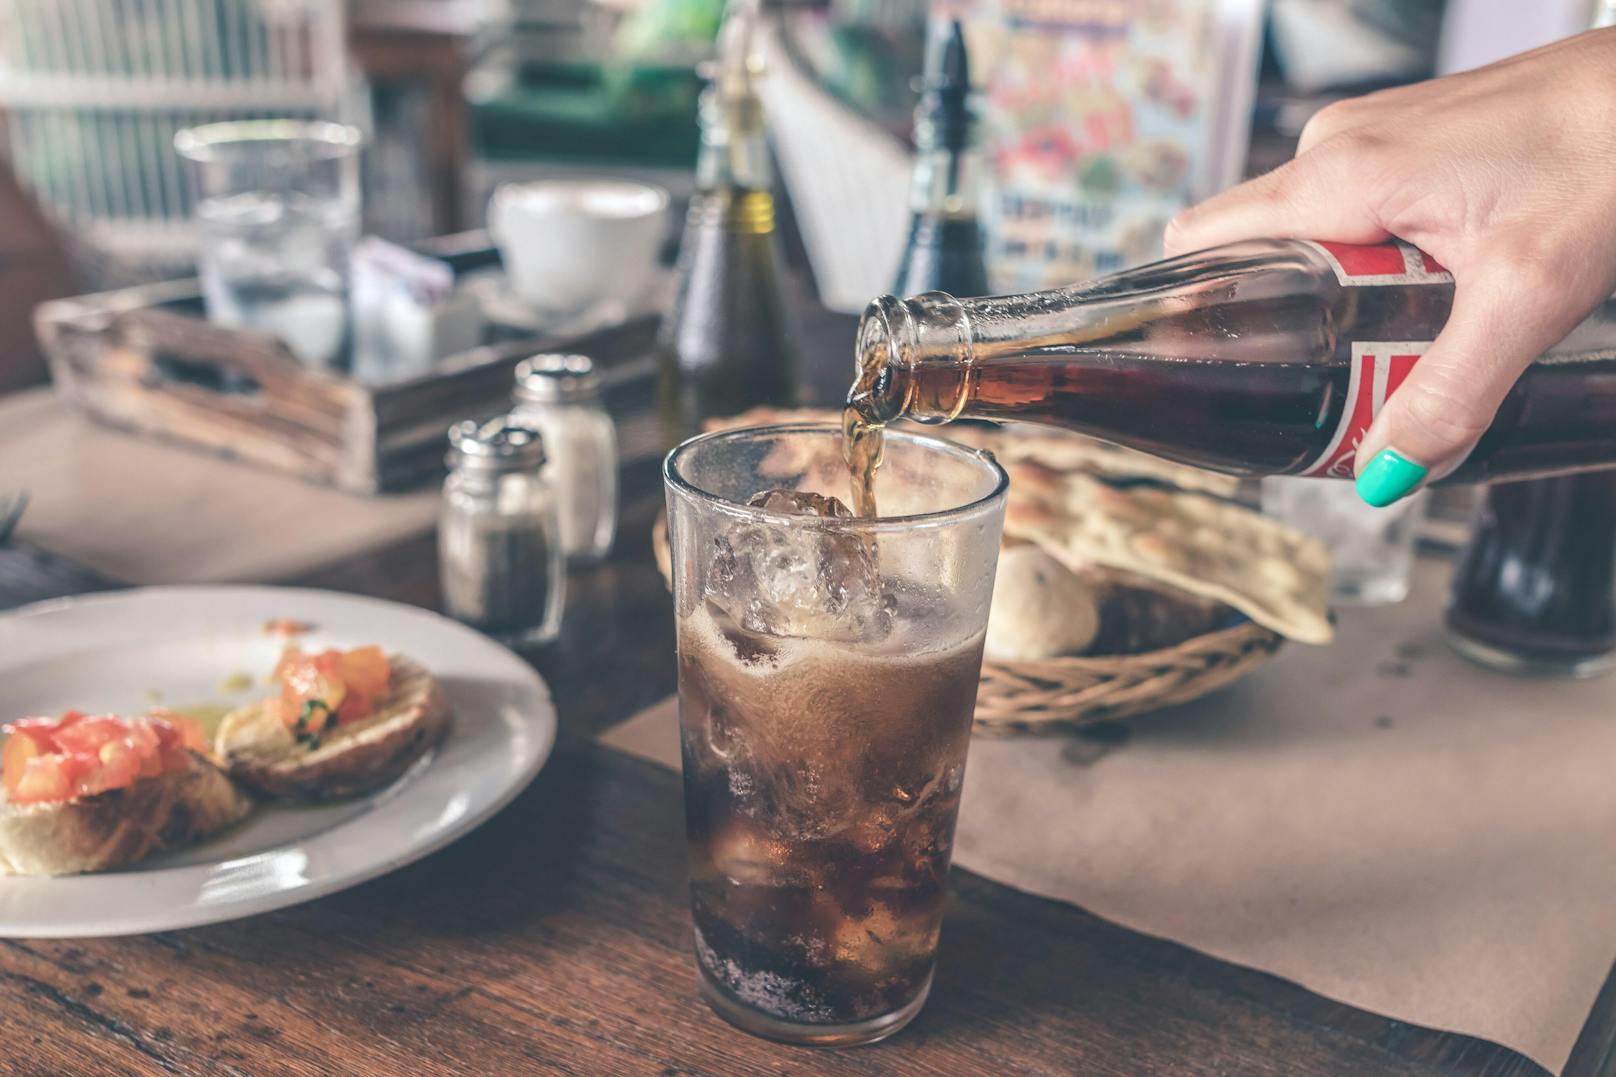 Die Umsatzsteuer für alkoholfreie Getränke wird von 20 auf den Mindestsatz 10 Prozent gesenkt, sagt die österreichische Regierung.